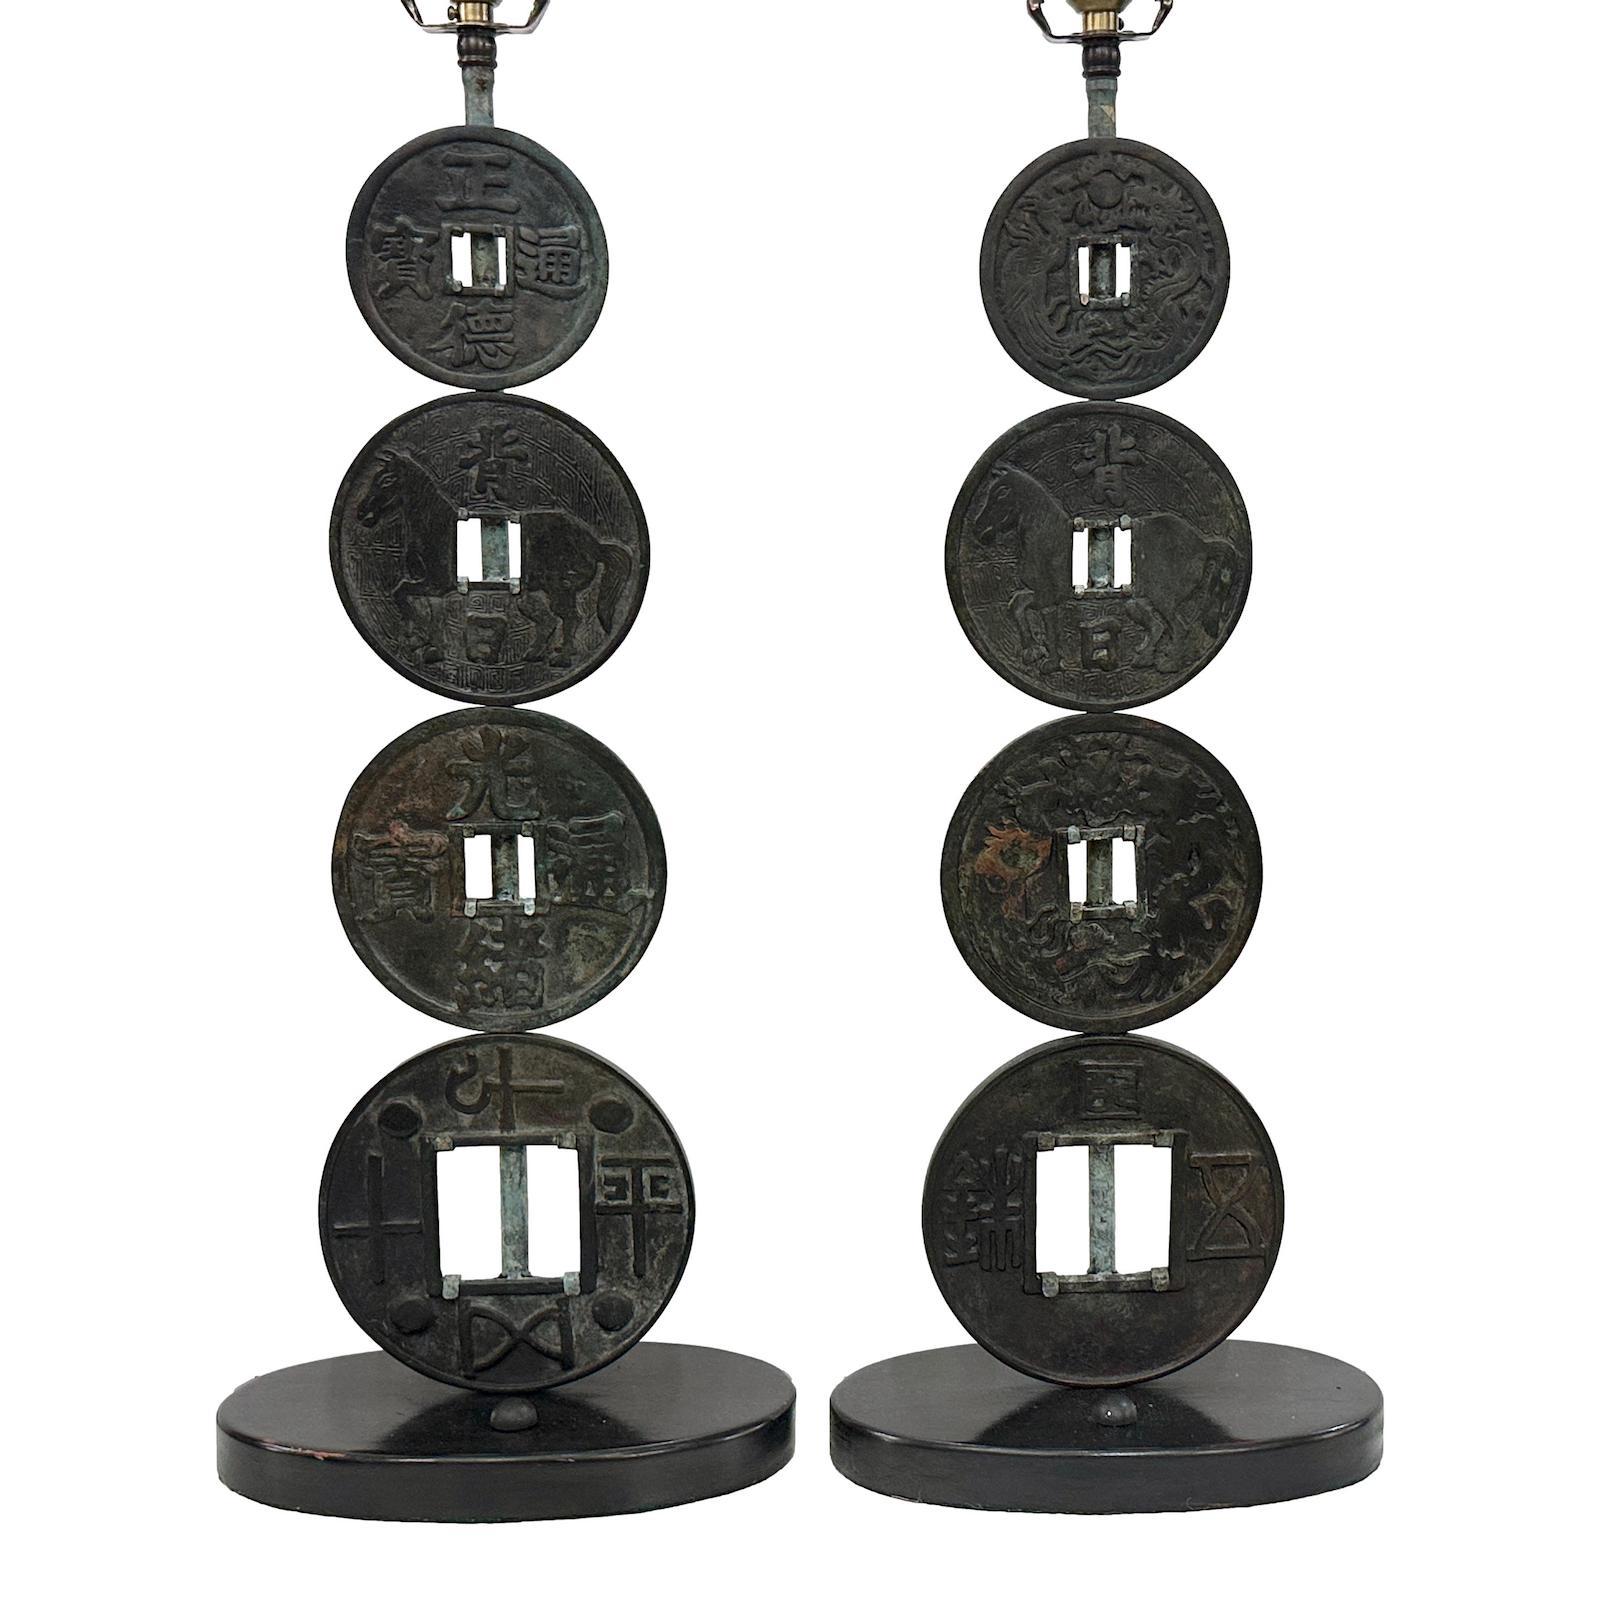 Paire de lampes de poche chinoises en bronze patiné datant des années 1950.

Mesures :
Hauteur du corps : 23
Hauteur jusqu'à l'appui de l'abat-jour : 33